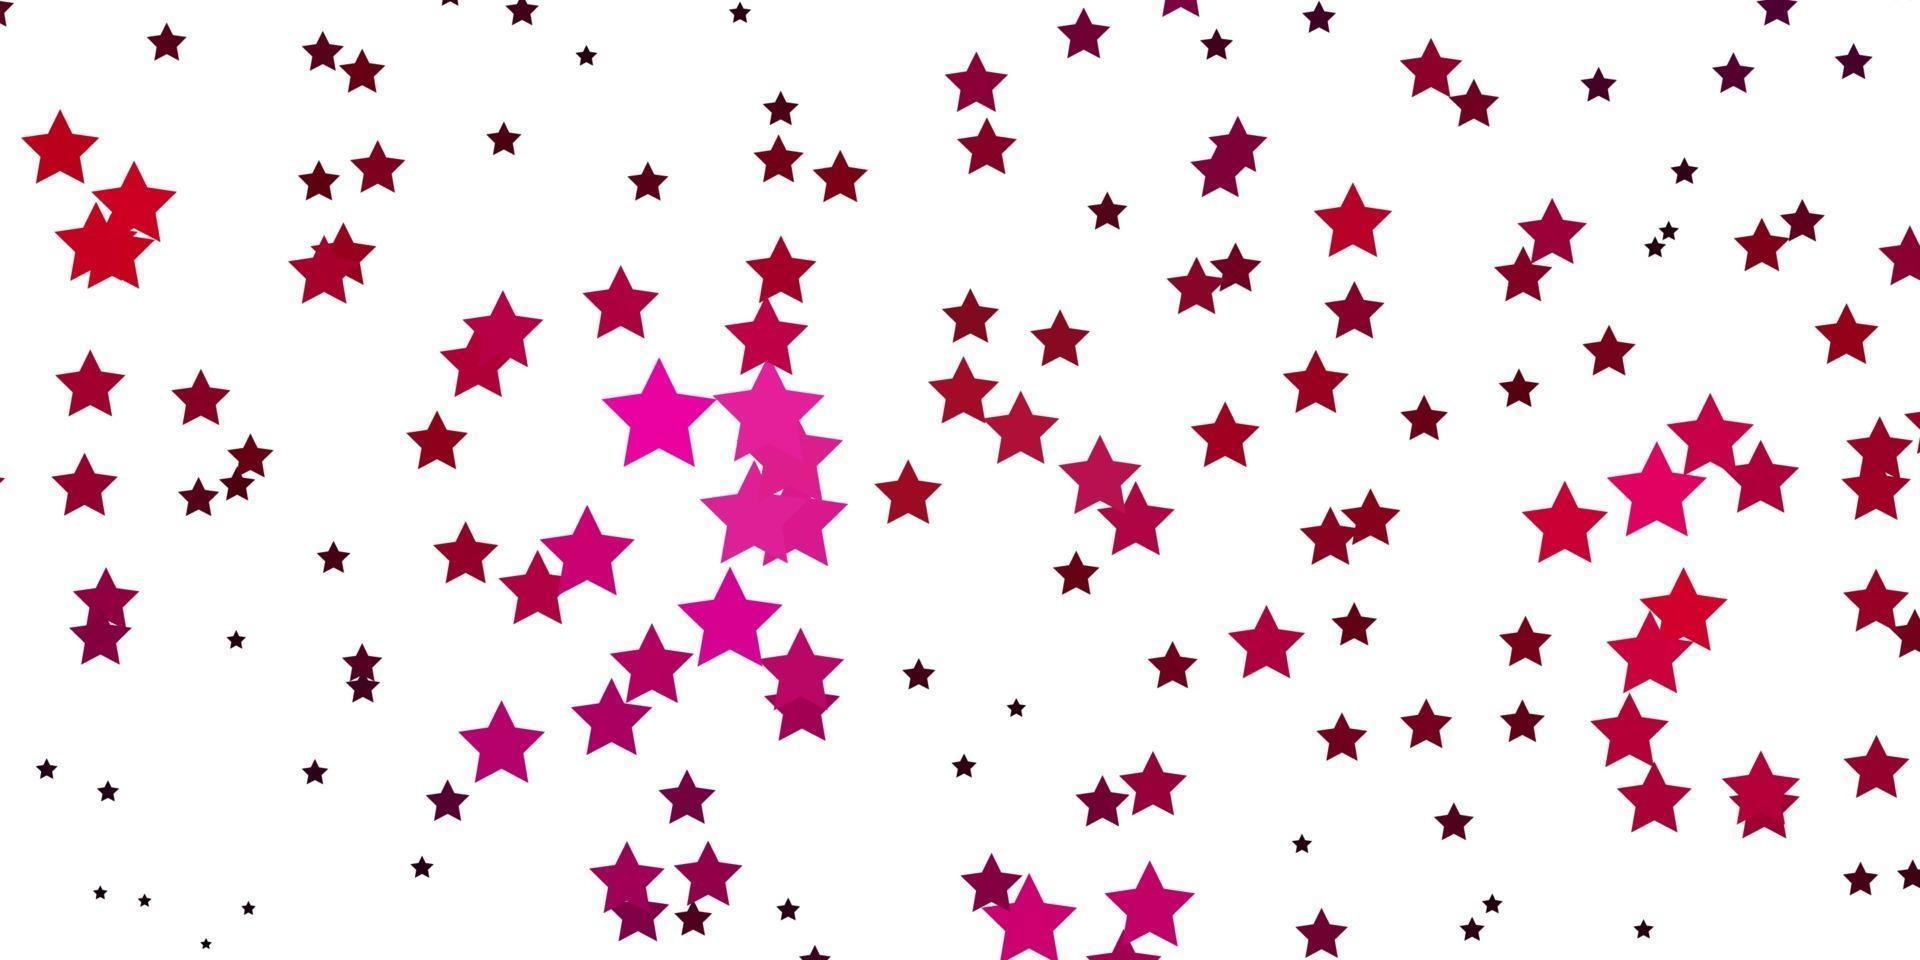 sfondo vettoriale rosa chiaro con stelle colorate.